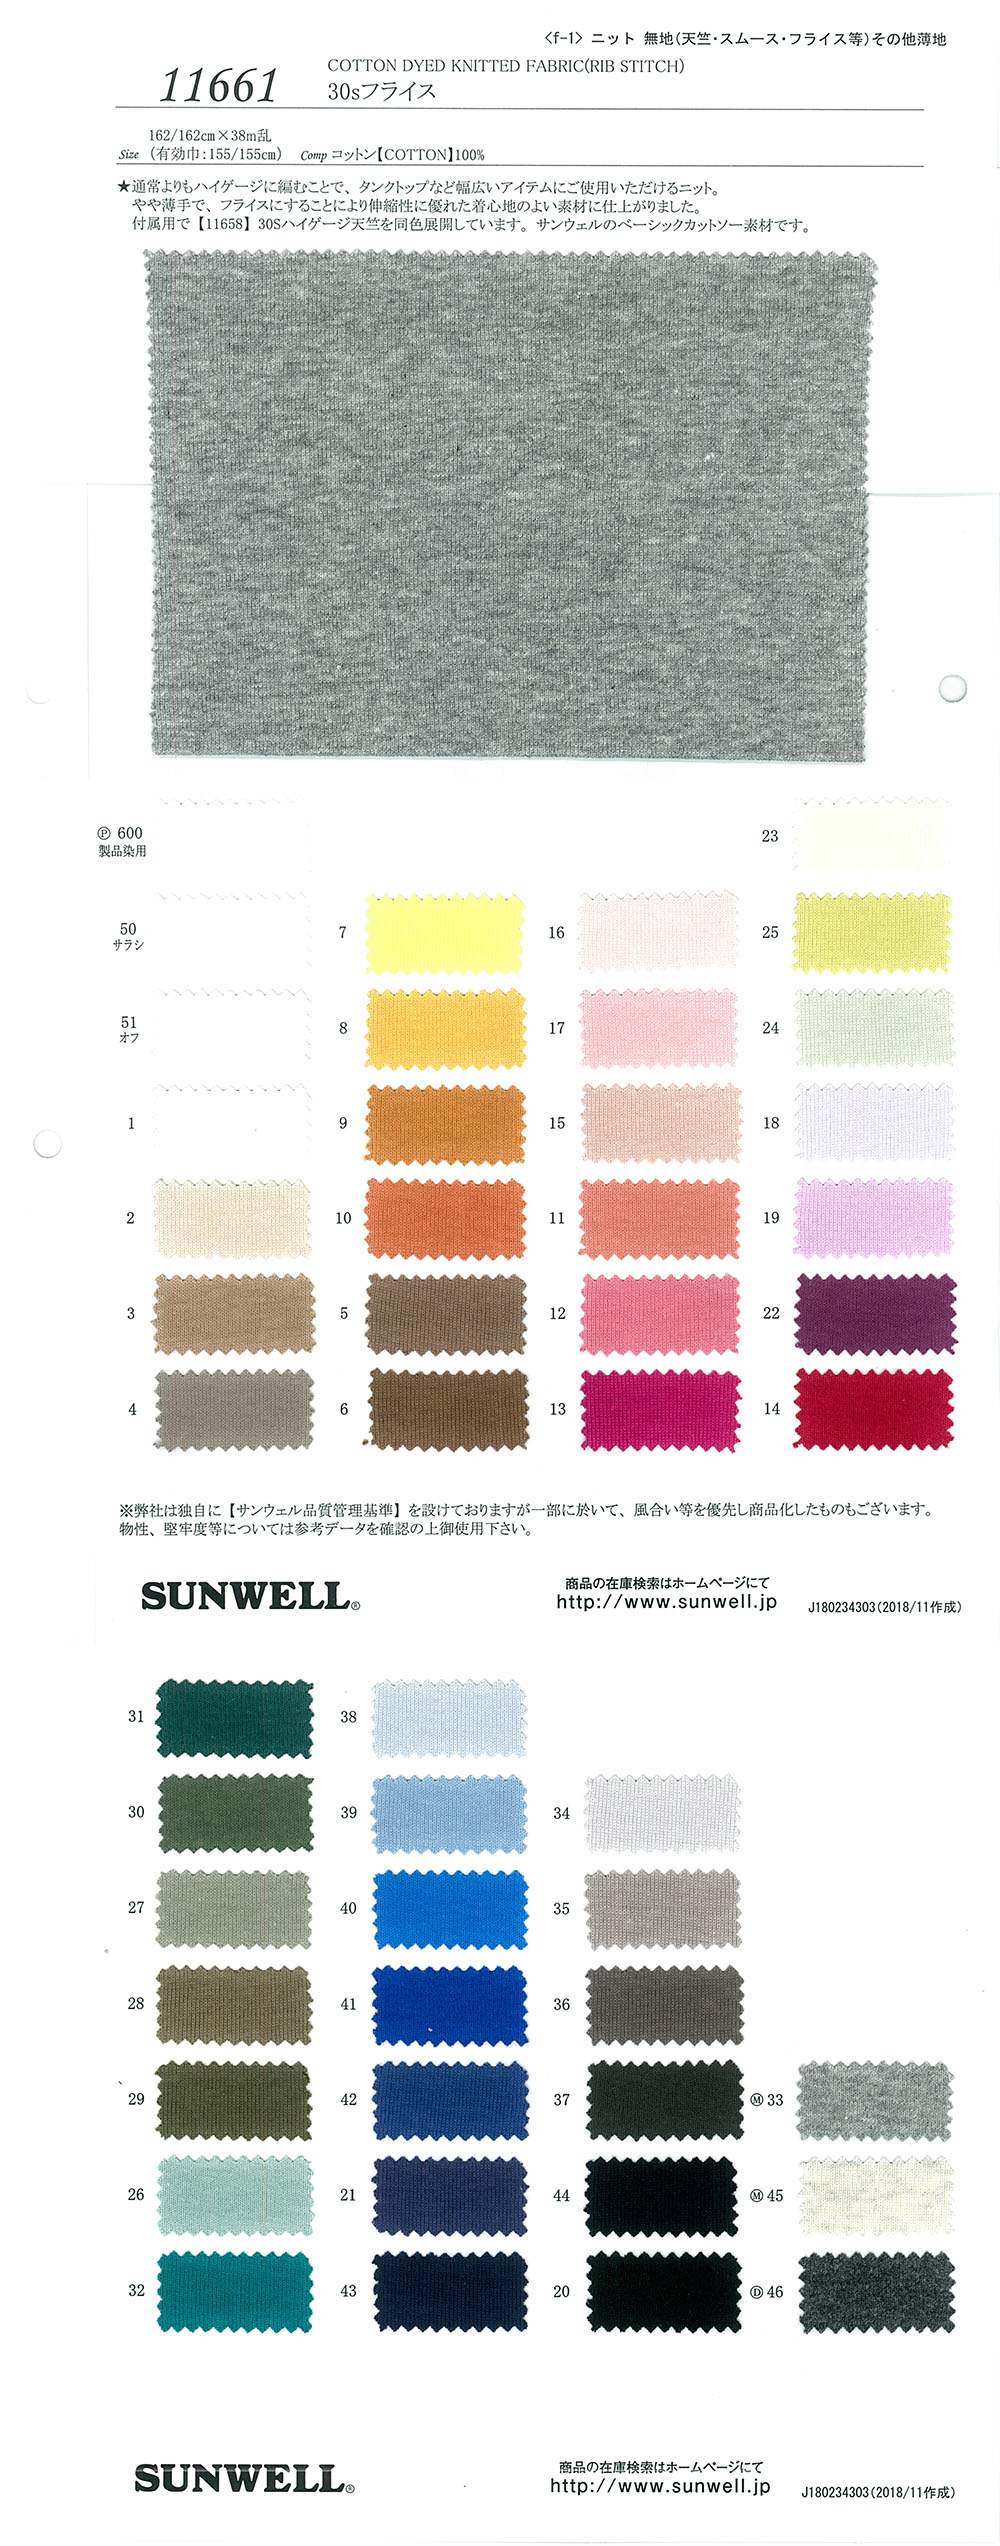 11661 Costilla Circular De 30 Hilos Simples[Fabrica Textil] SUNWELL